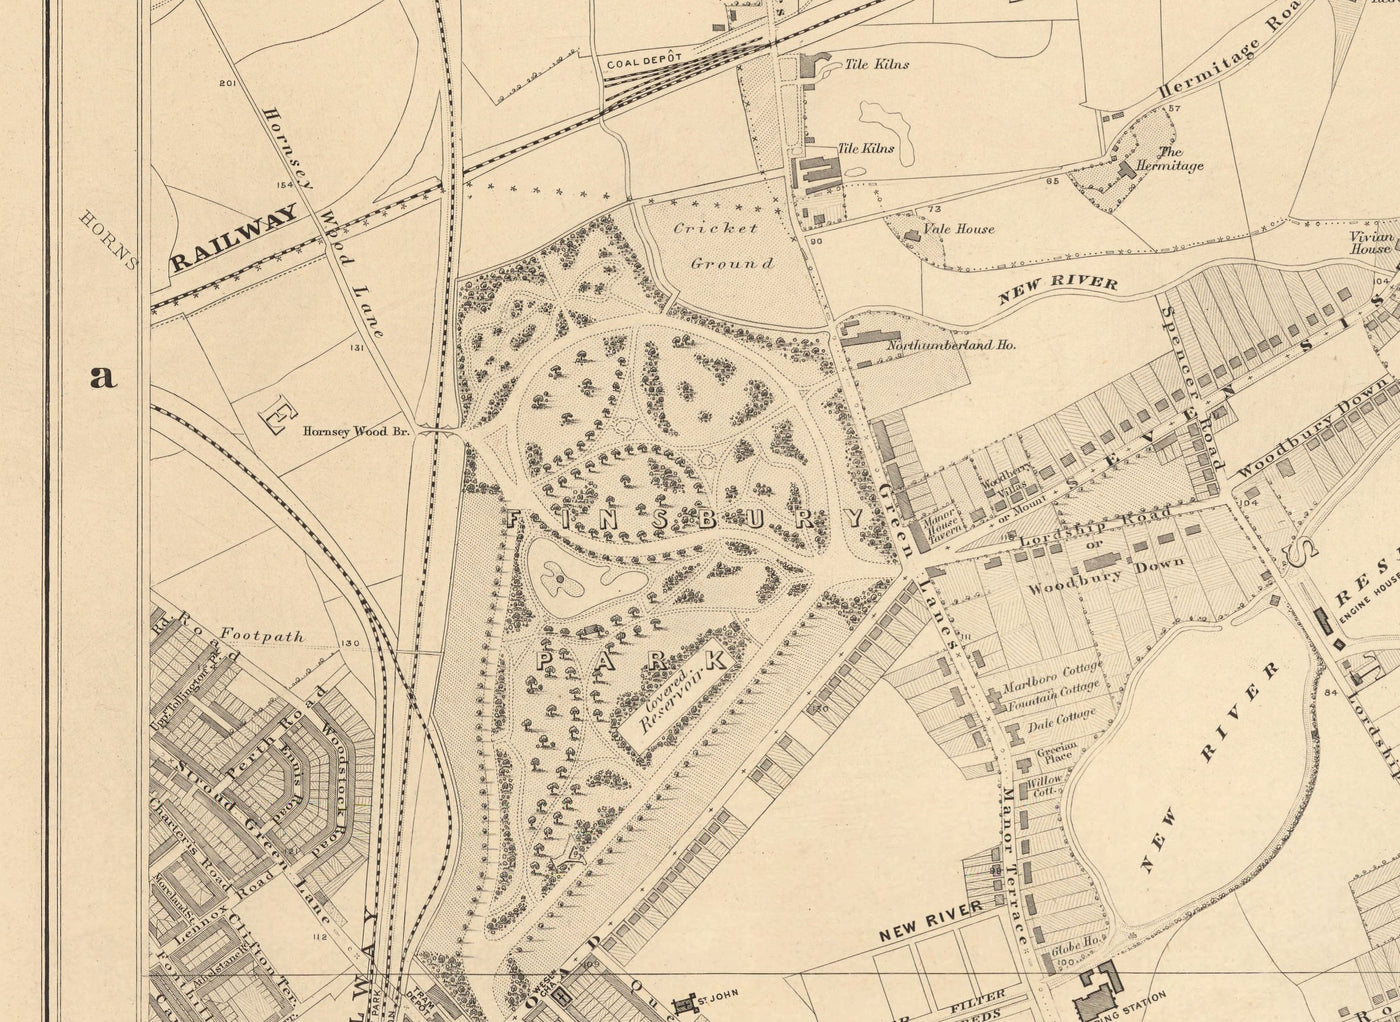 Alte Karte von North London, 1862 von Edward Stanford - Finsbury Park, Hackney Downs, Stoke Newington, Clapton - N4, N5, N15, N16, E5